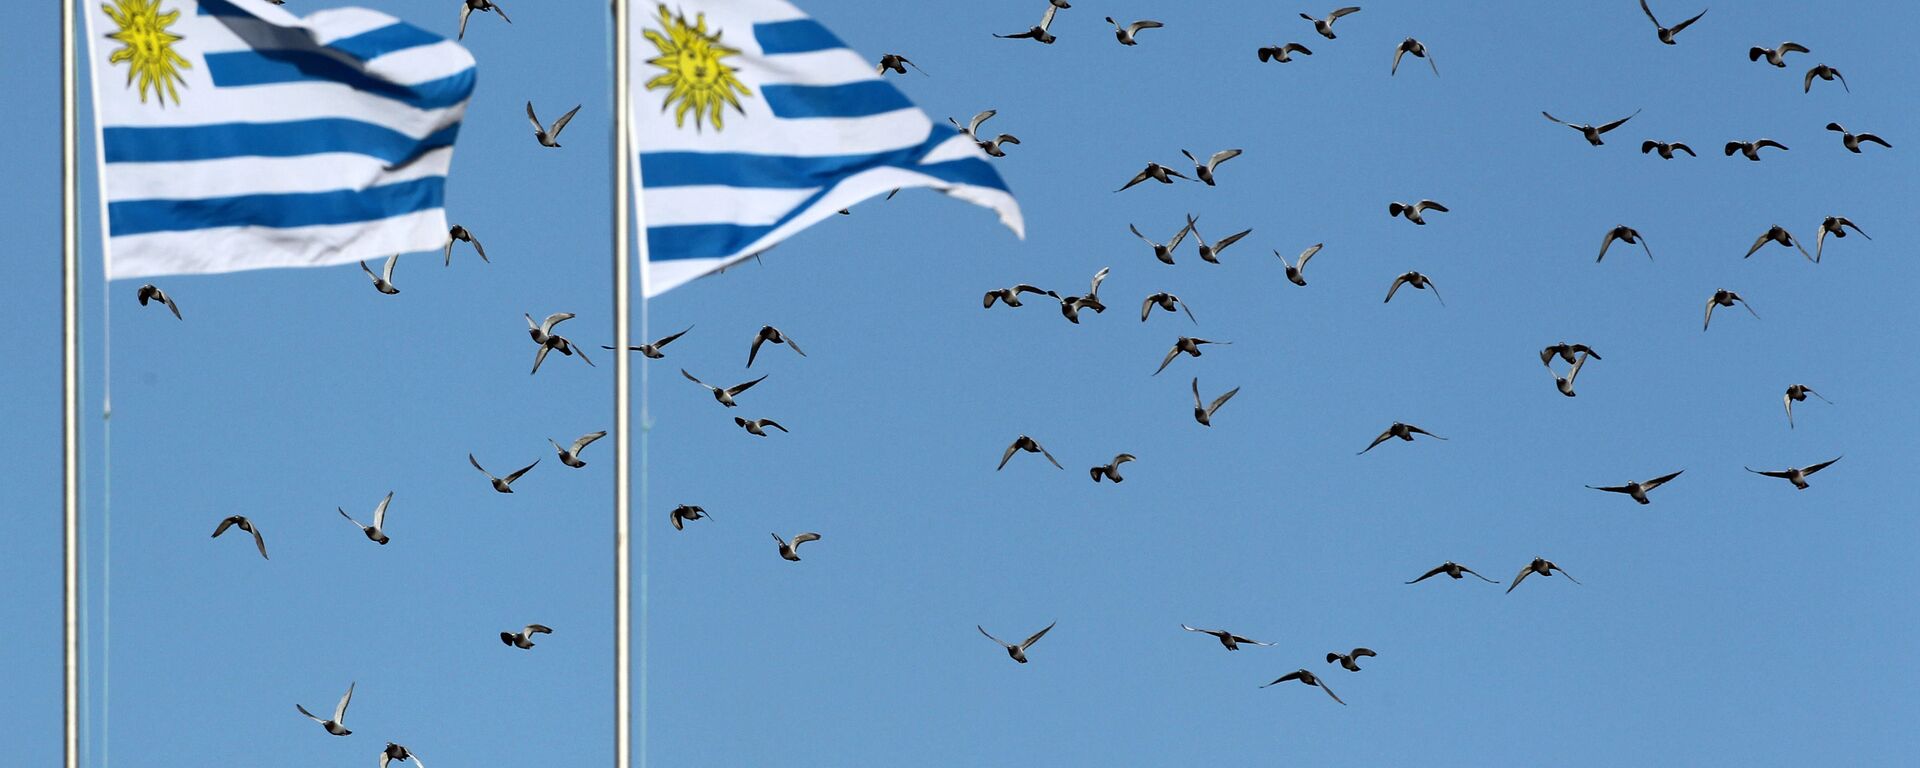 Banderas de Uruguay (Imagen referencial) - Sputnik Mundo, 1920, 08.12.2021